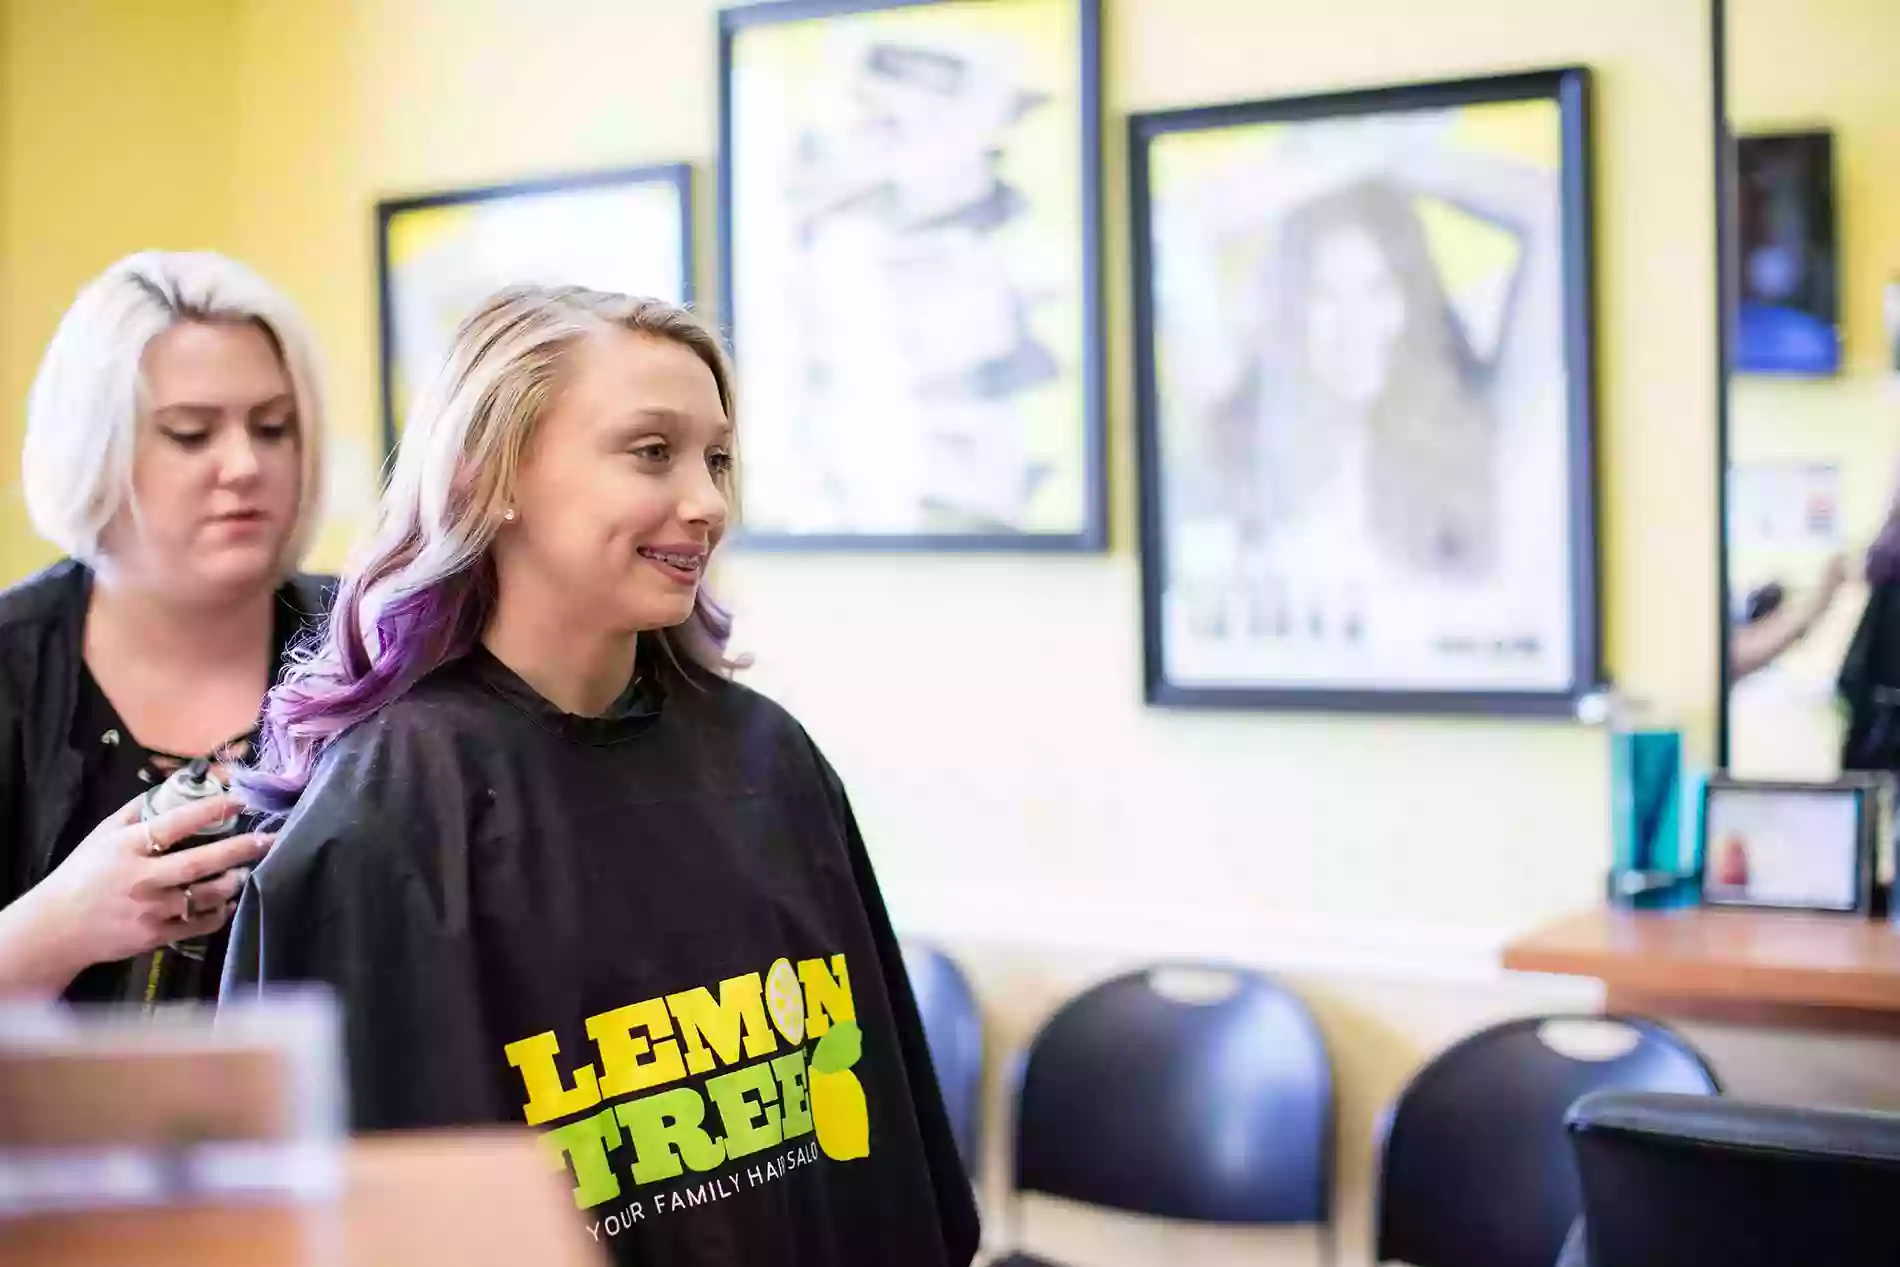 Lemon Tree Hair Salon Johnson City